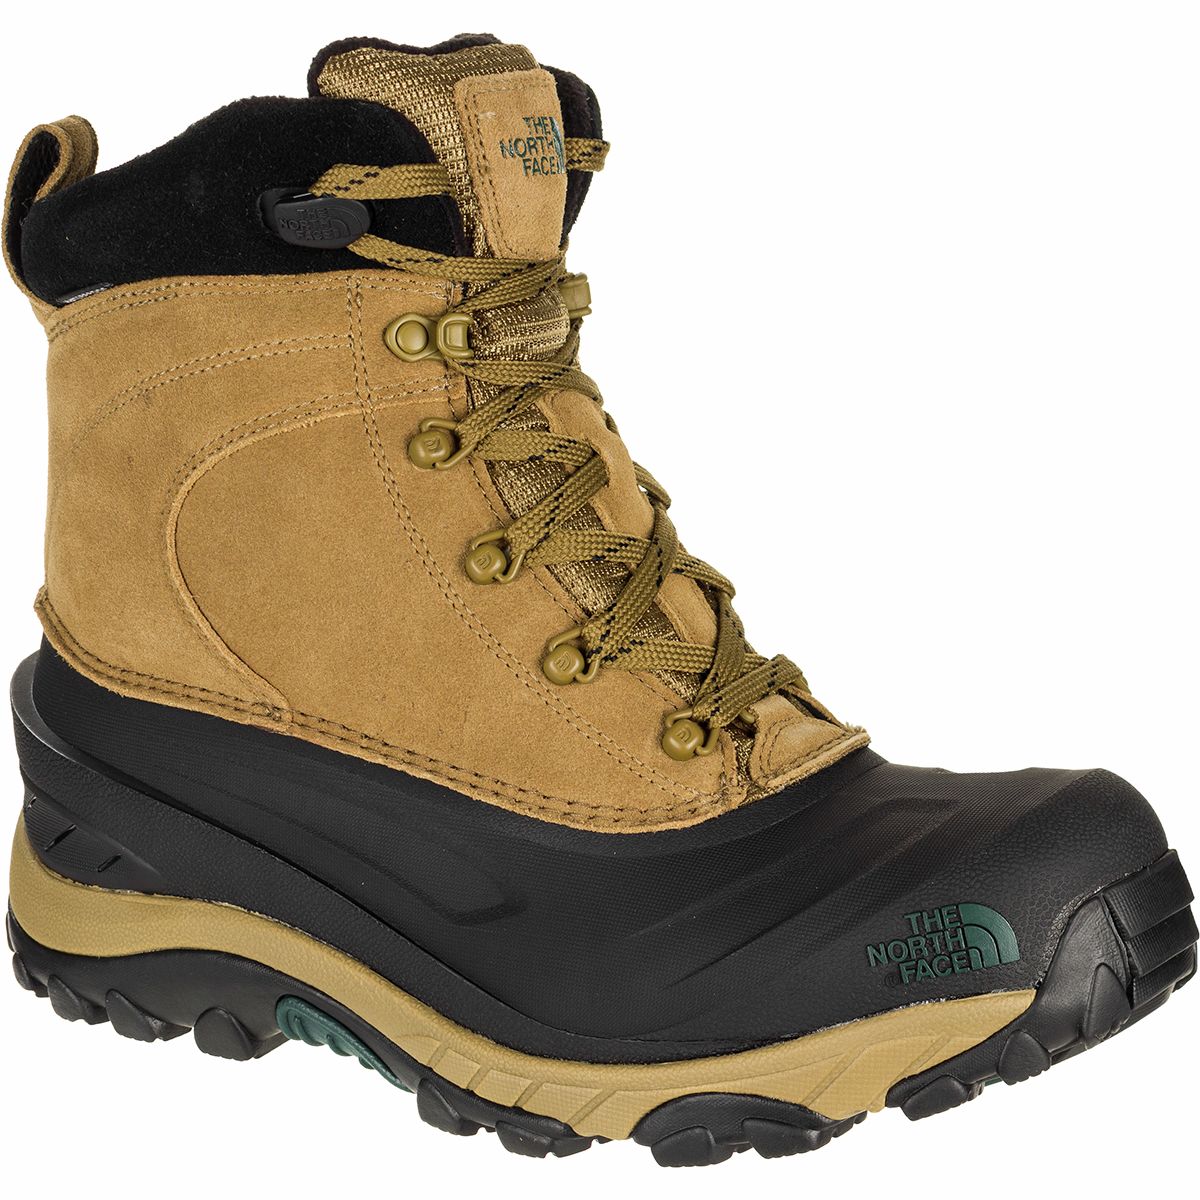 chilkat iii winter boots